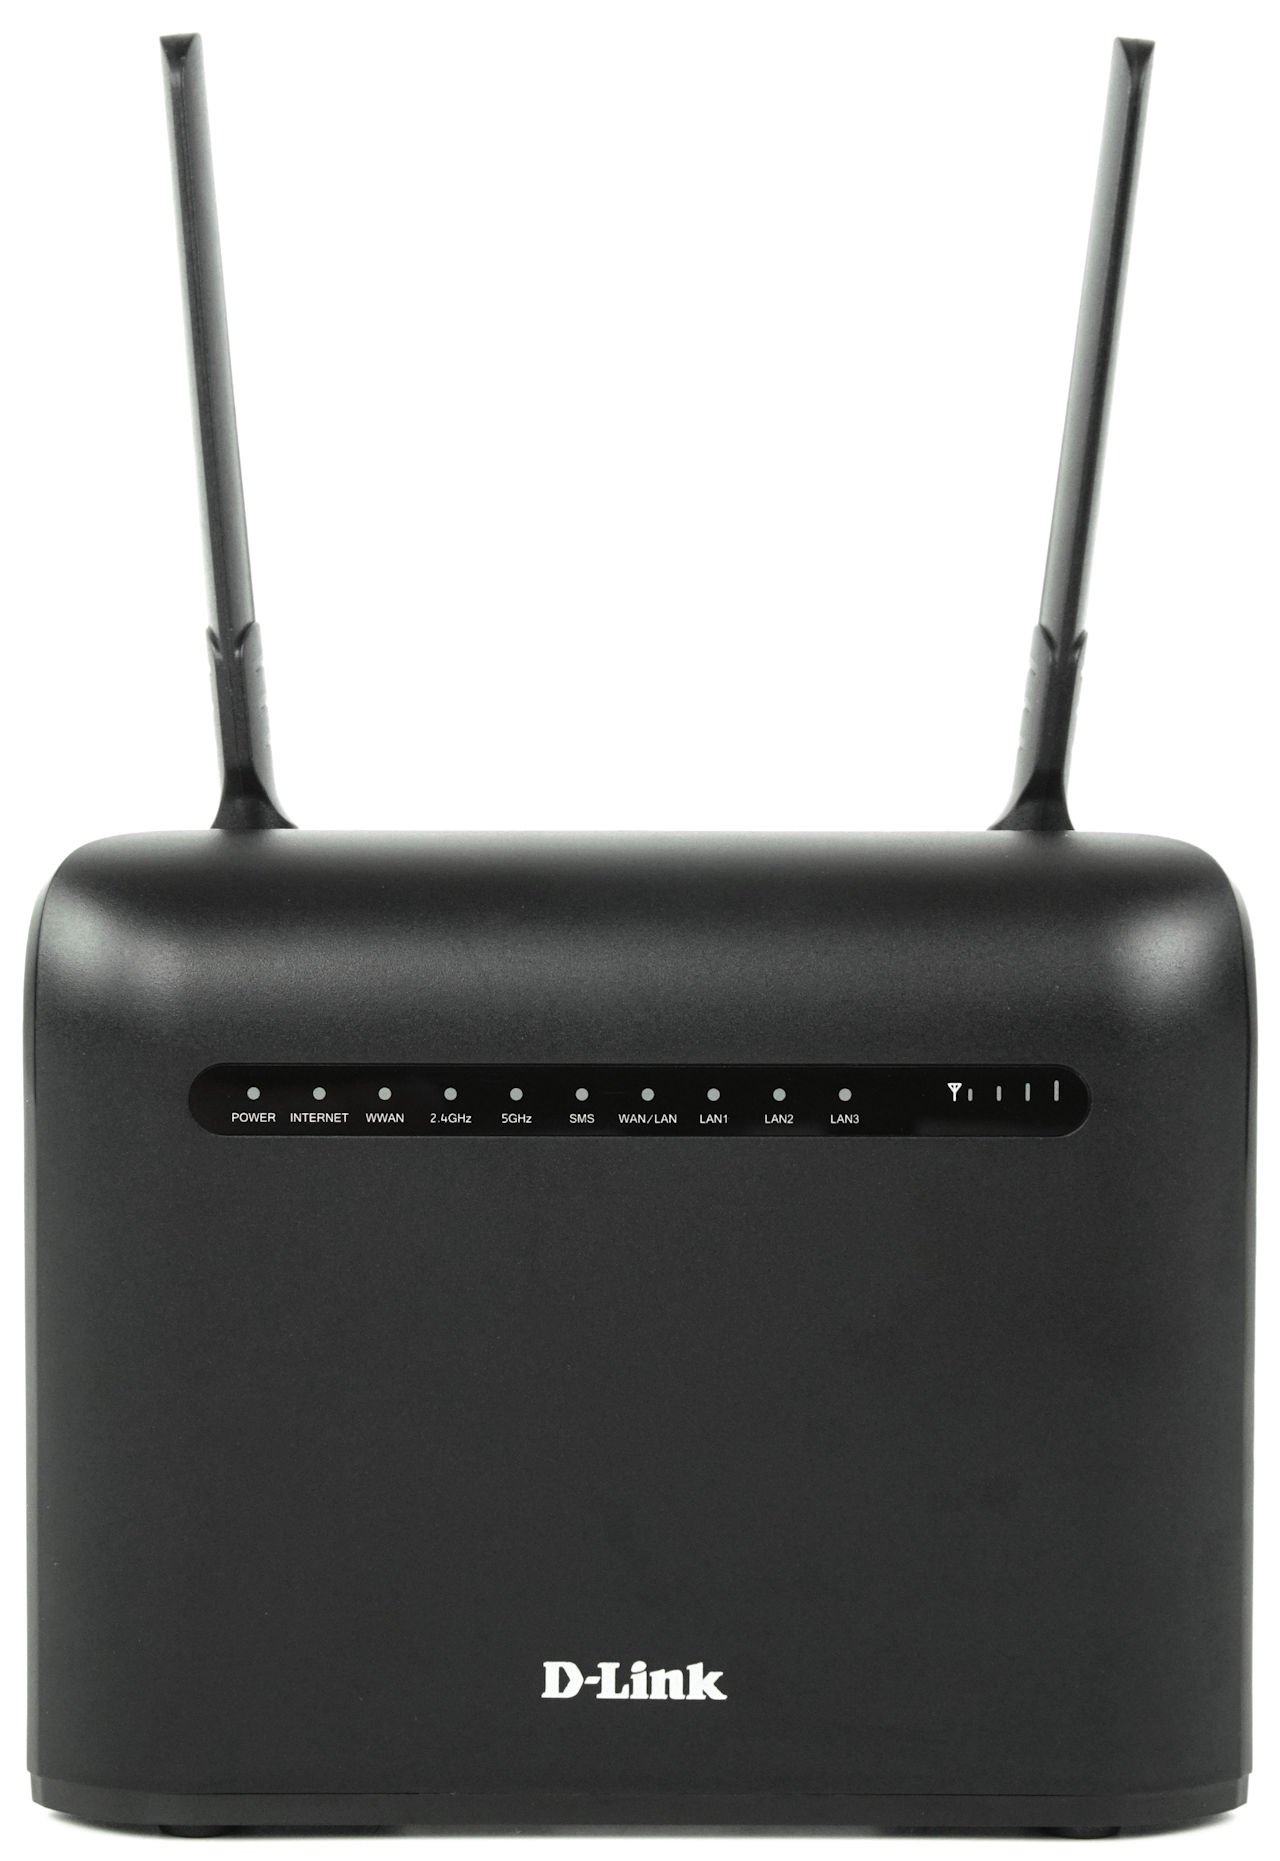 D-LINK DWR-961 4G LTE Router